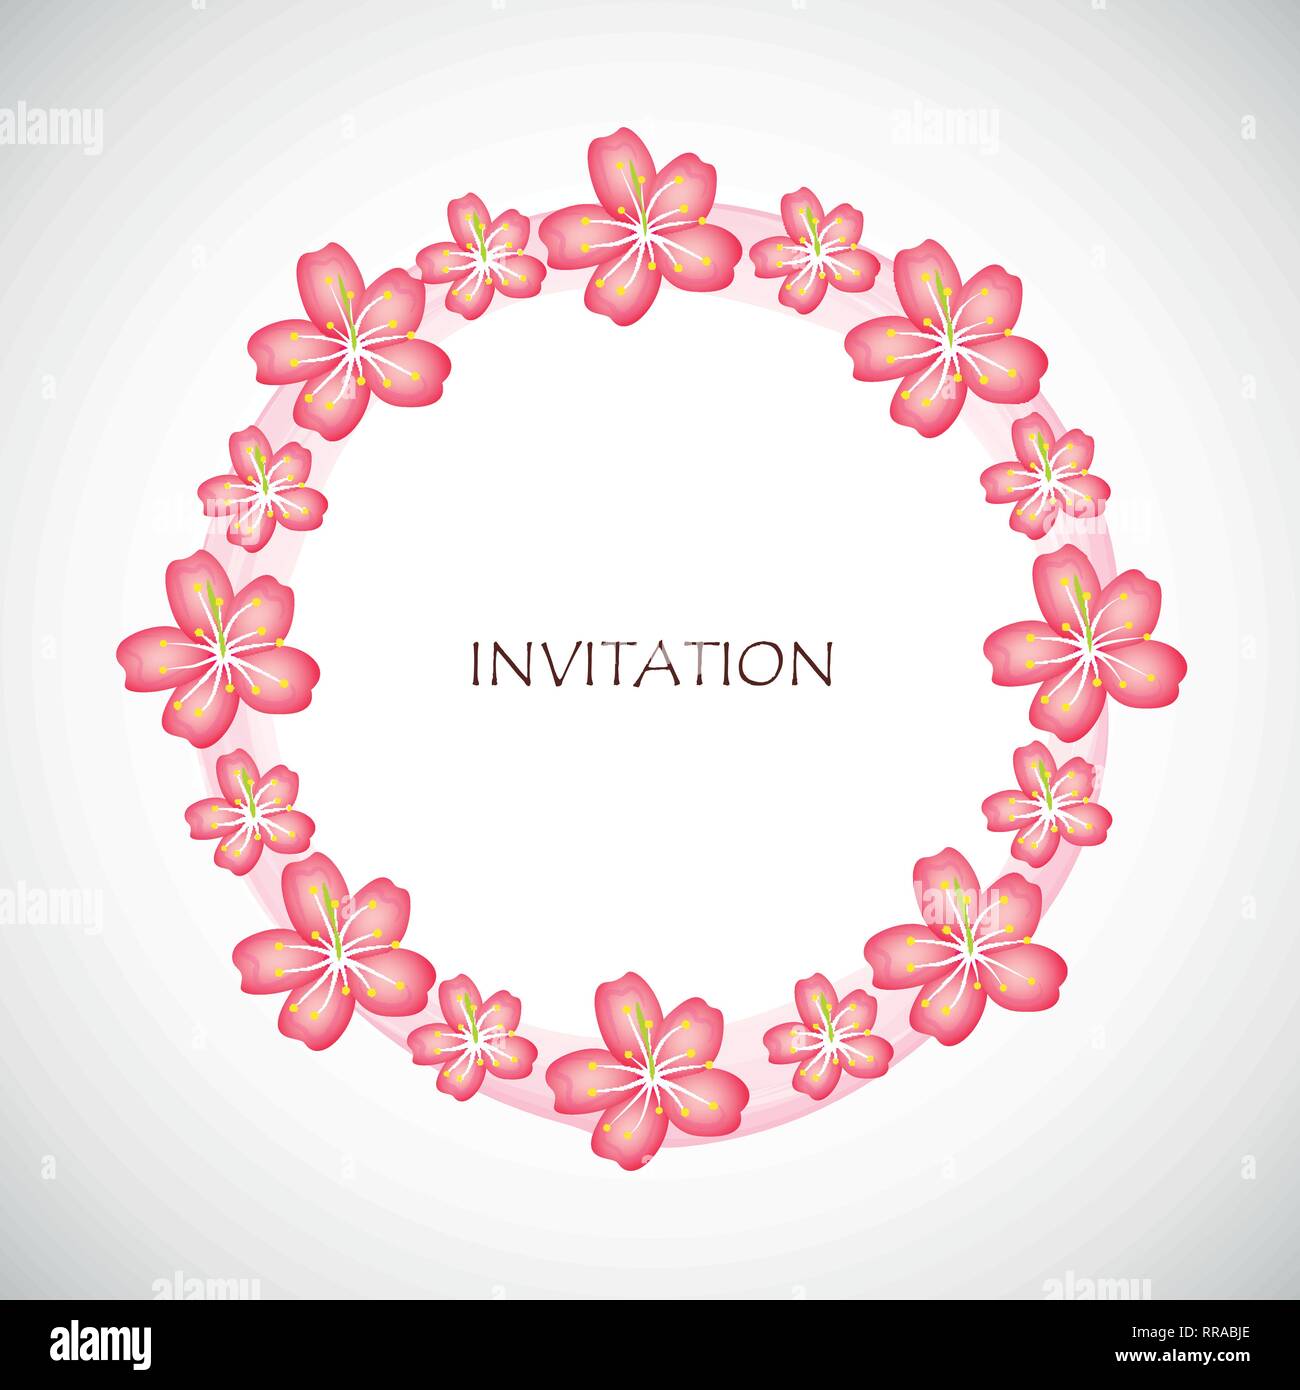 Rosa fiori di ciliegio fiori di sakura circle invito illustrazione vettoriale EPS10 Illustrazione Vettoriale